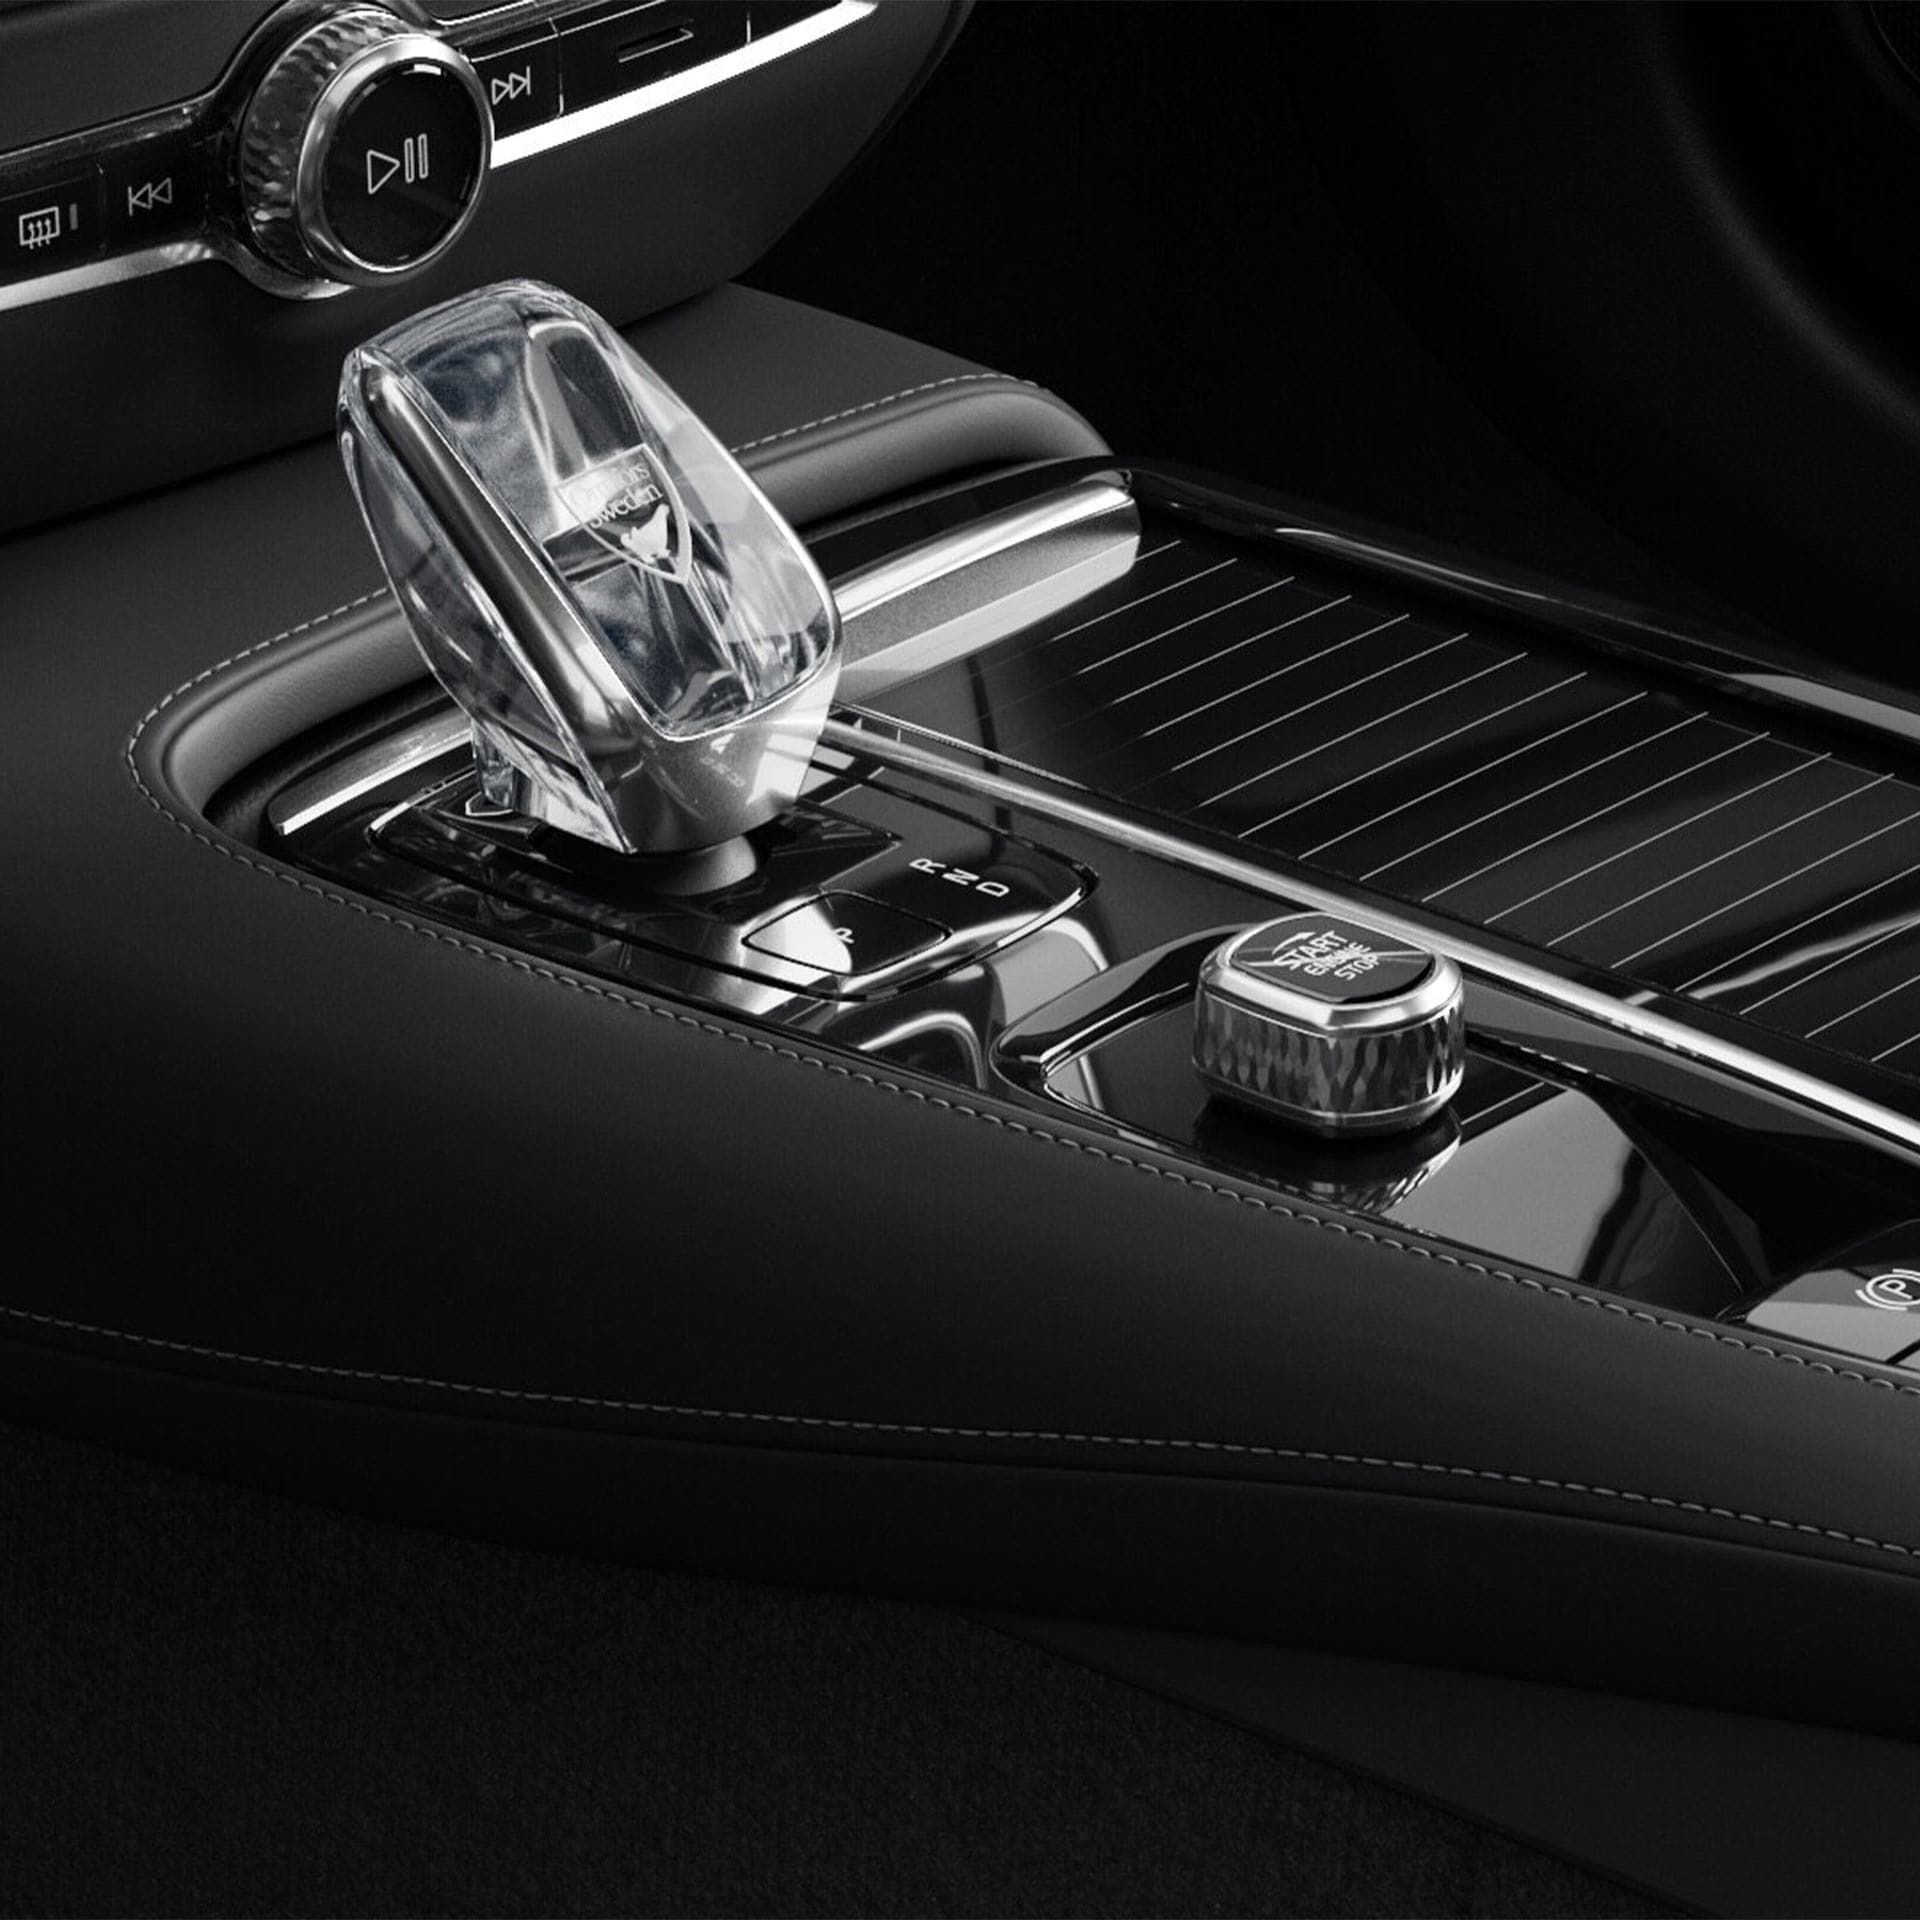 Botón de arranque y palanca de cambios de cristal en la consola central del Volvo V60 híbrido enchufable.